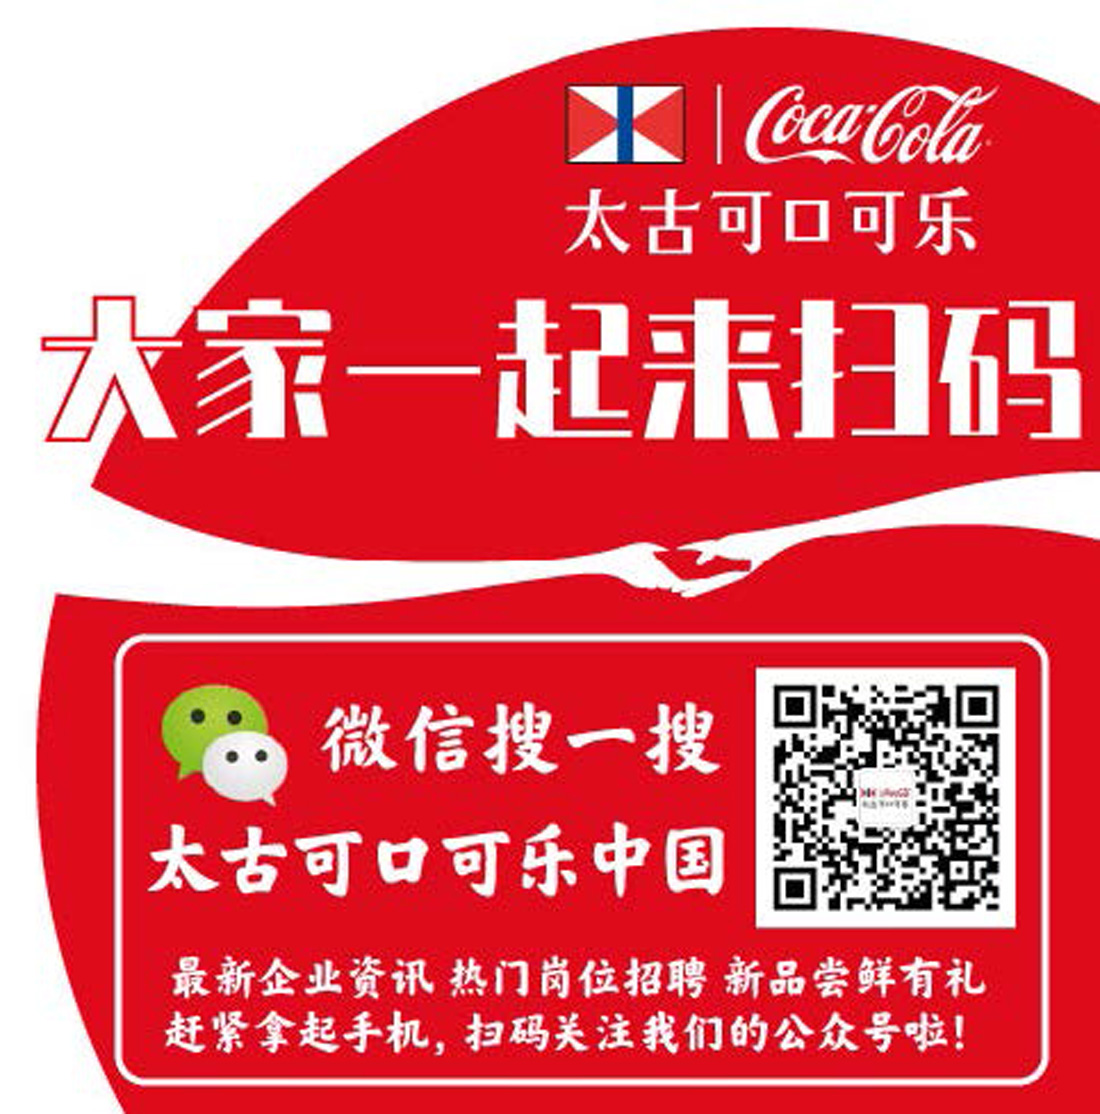 太古可口可乐中国 微信公众号开通运营